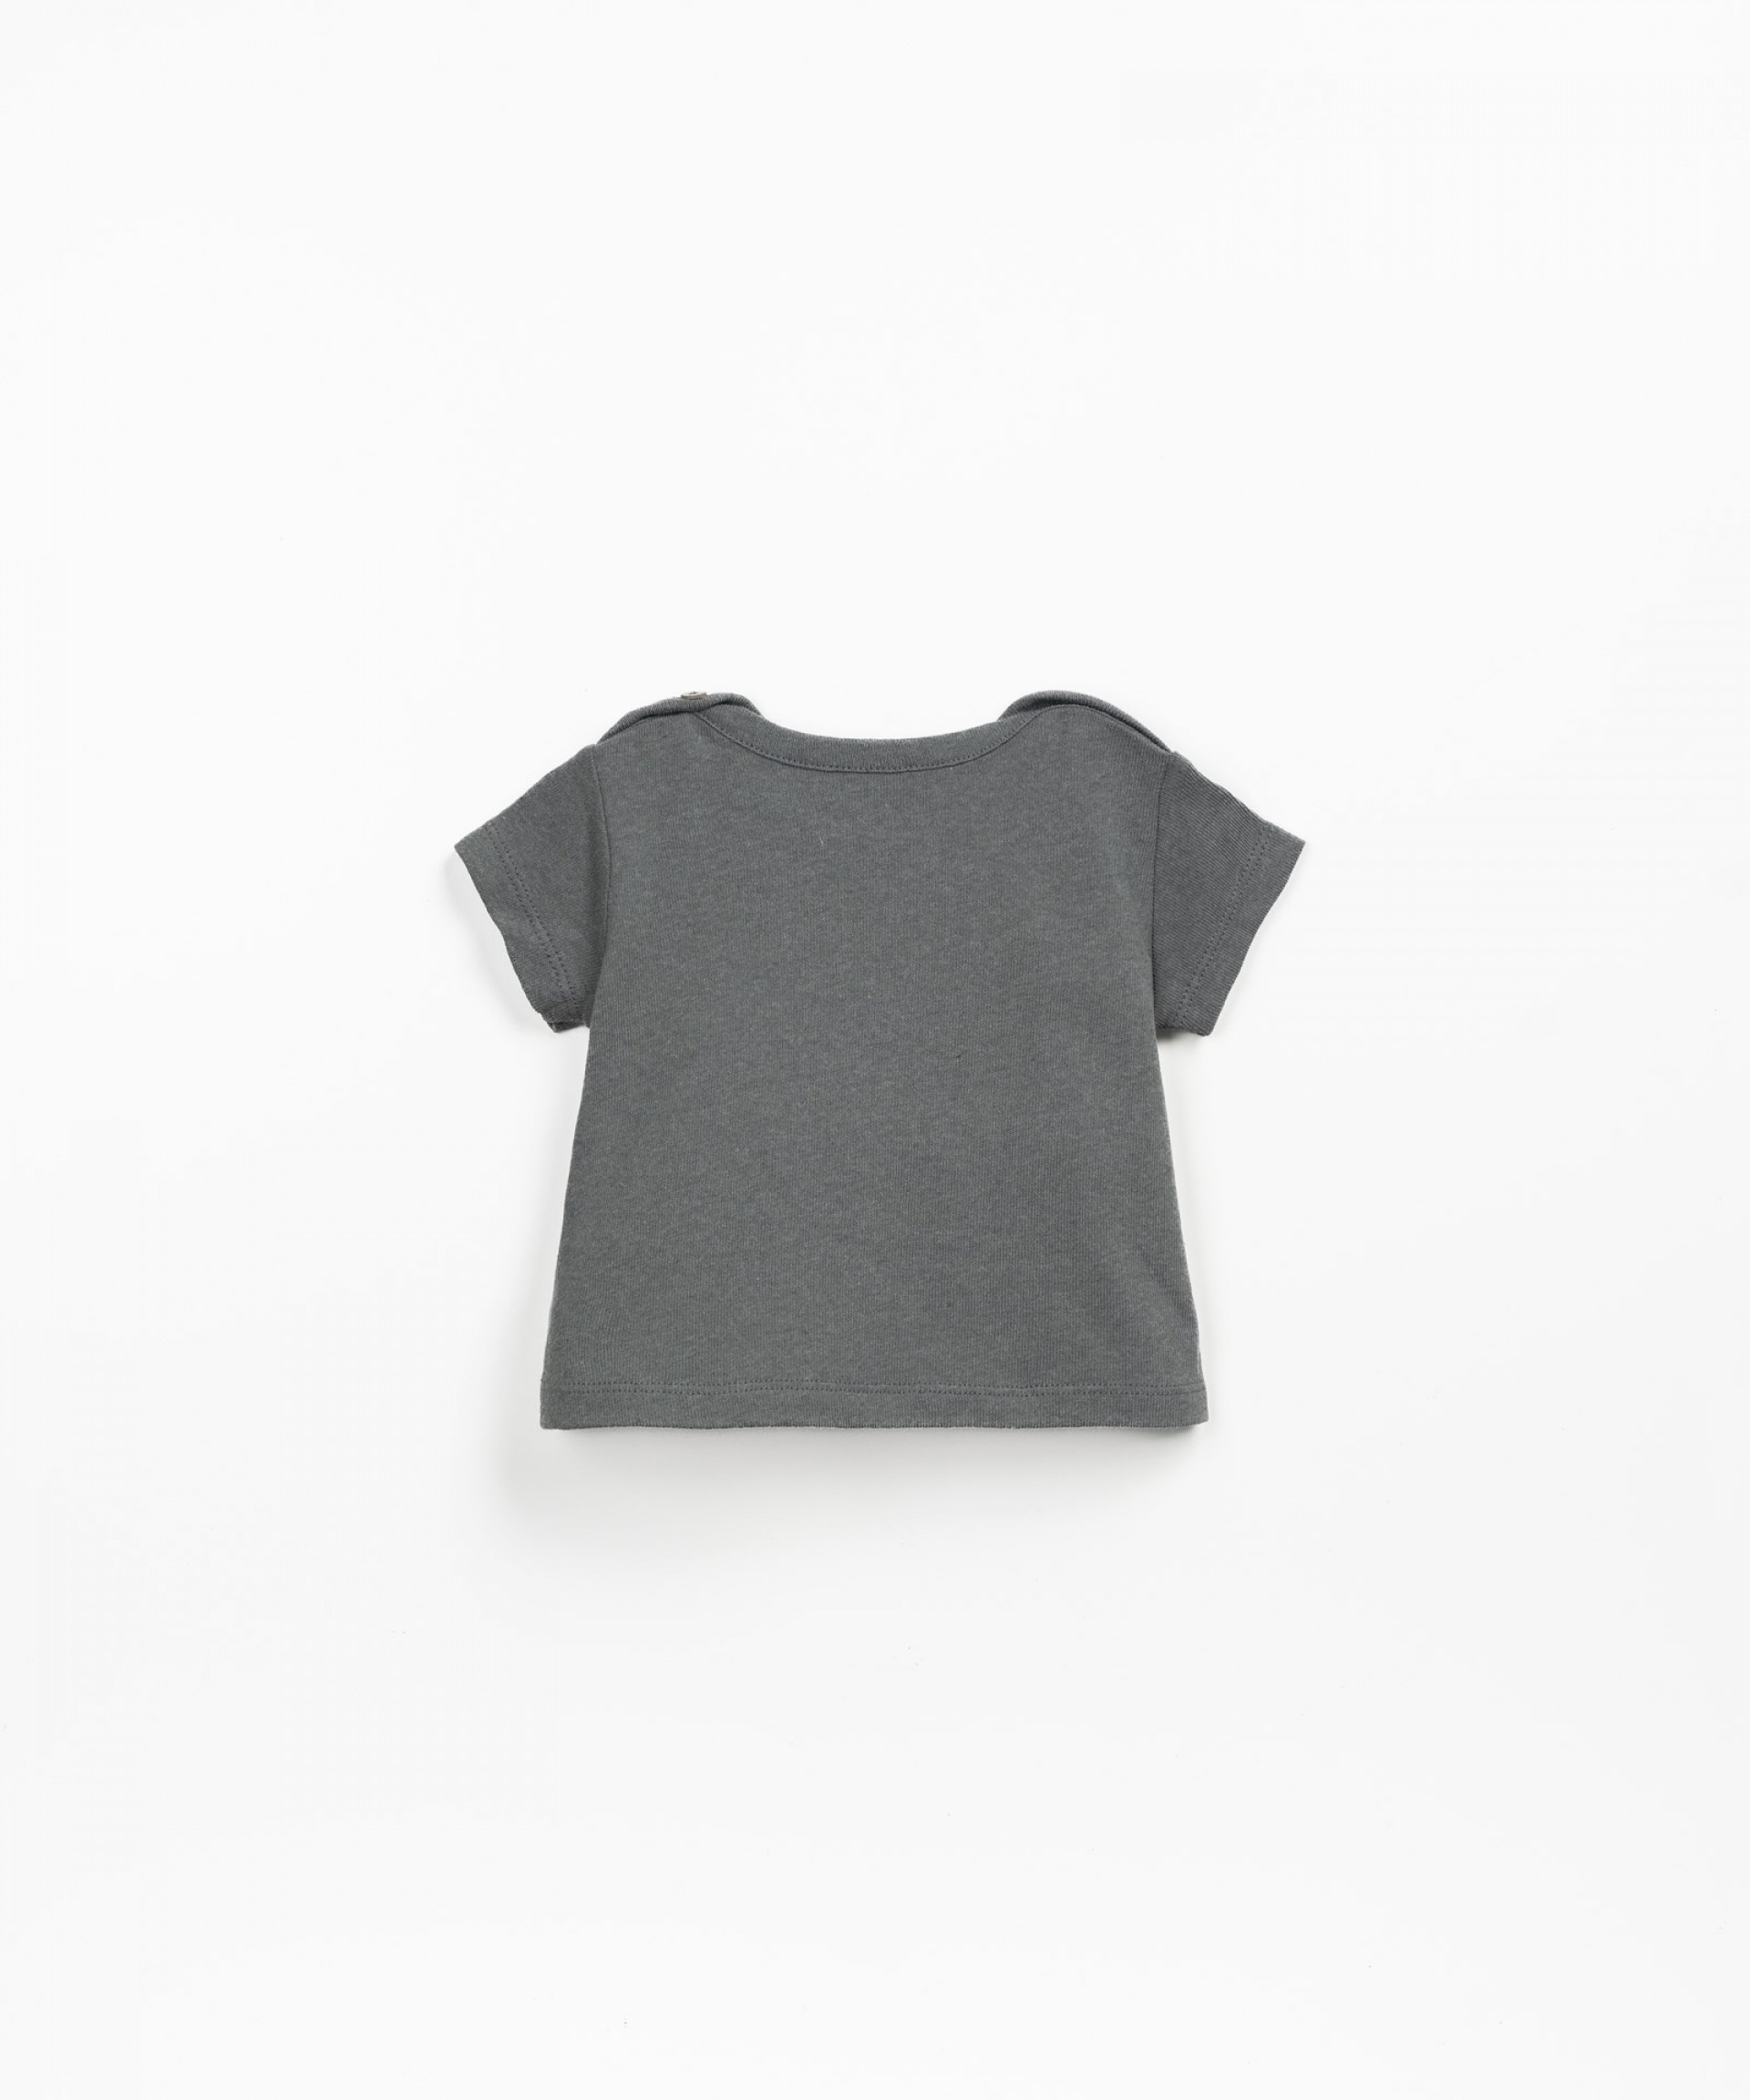 T-shirt com abertura no ombro | Textile Art